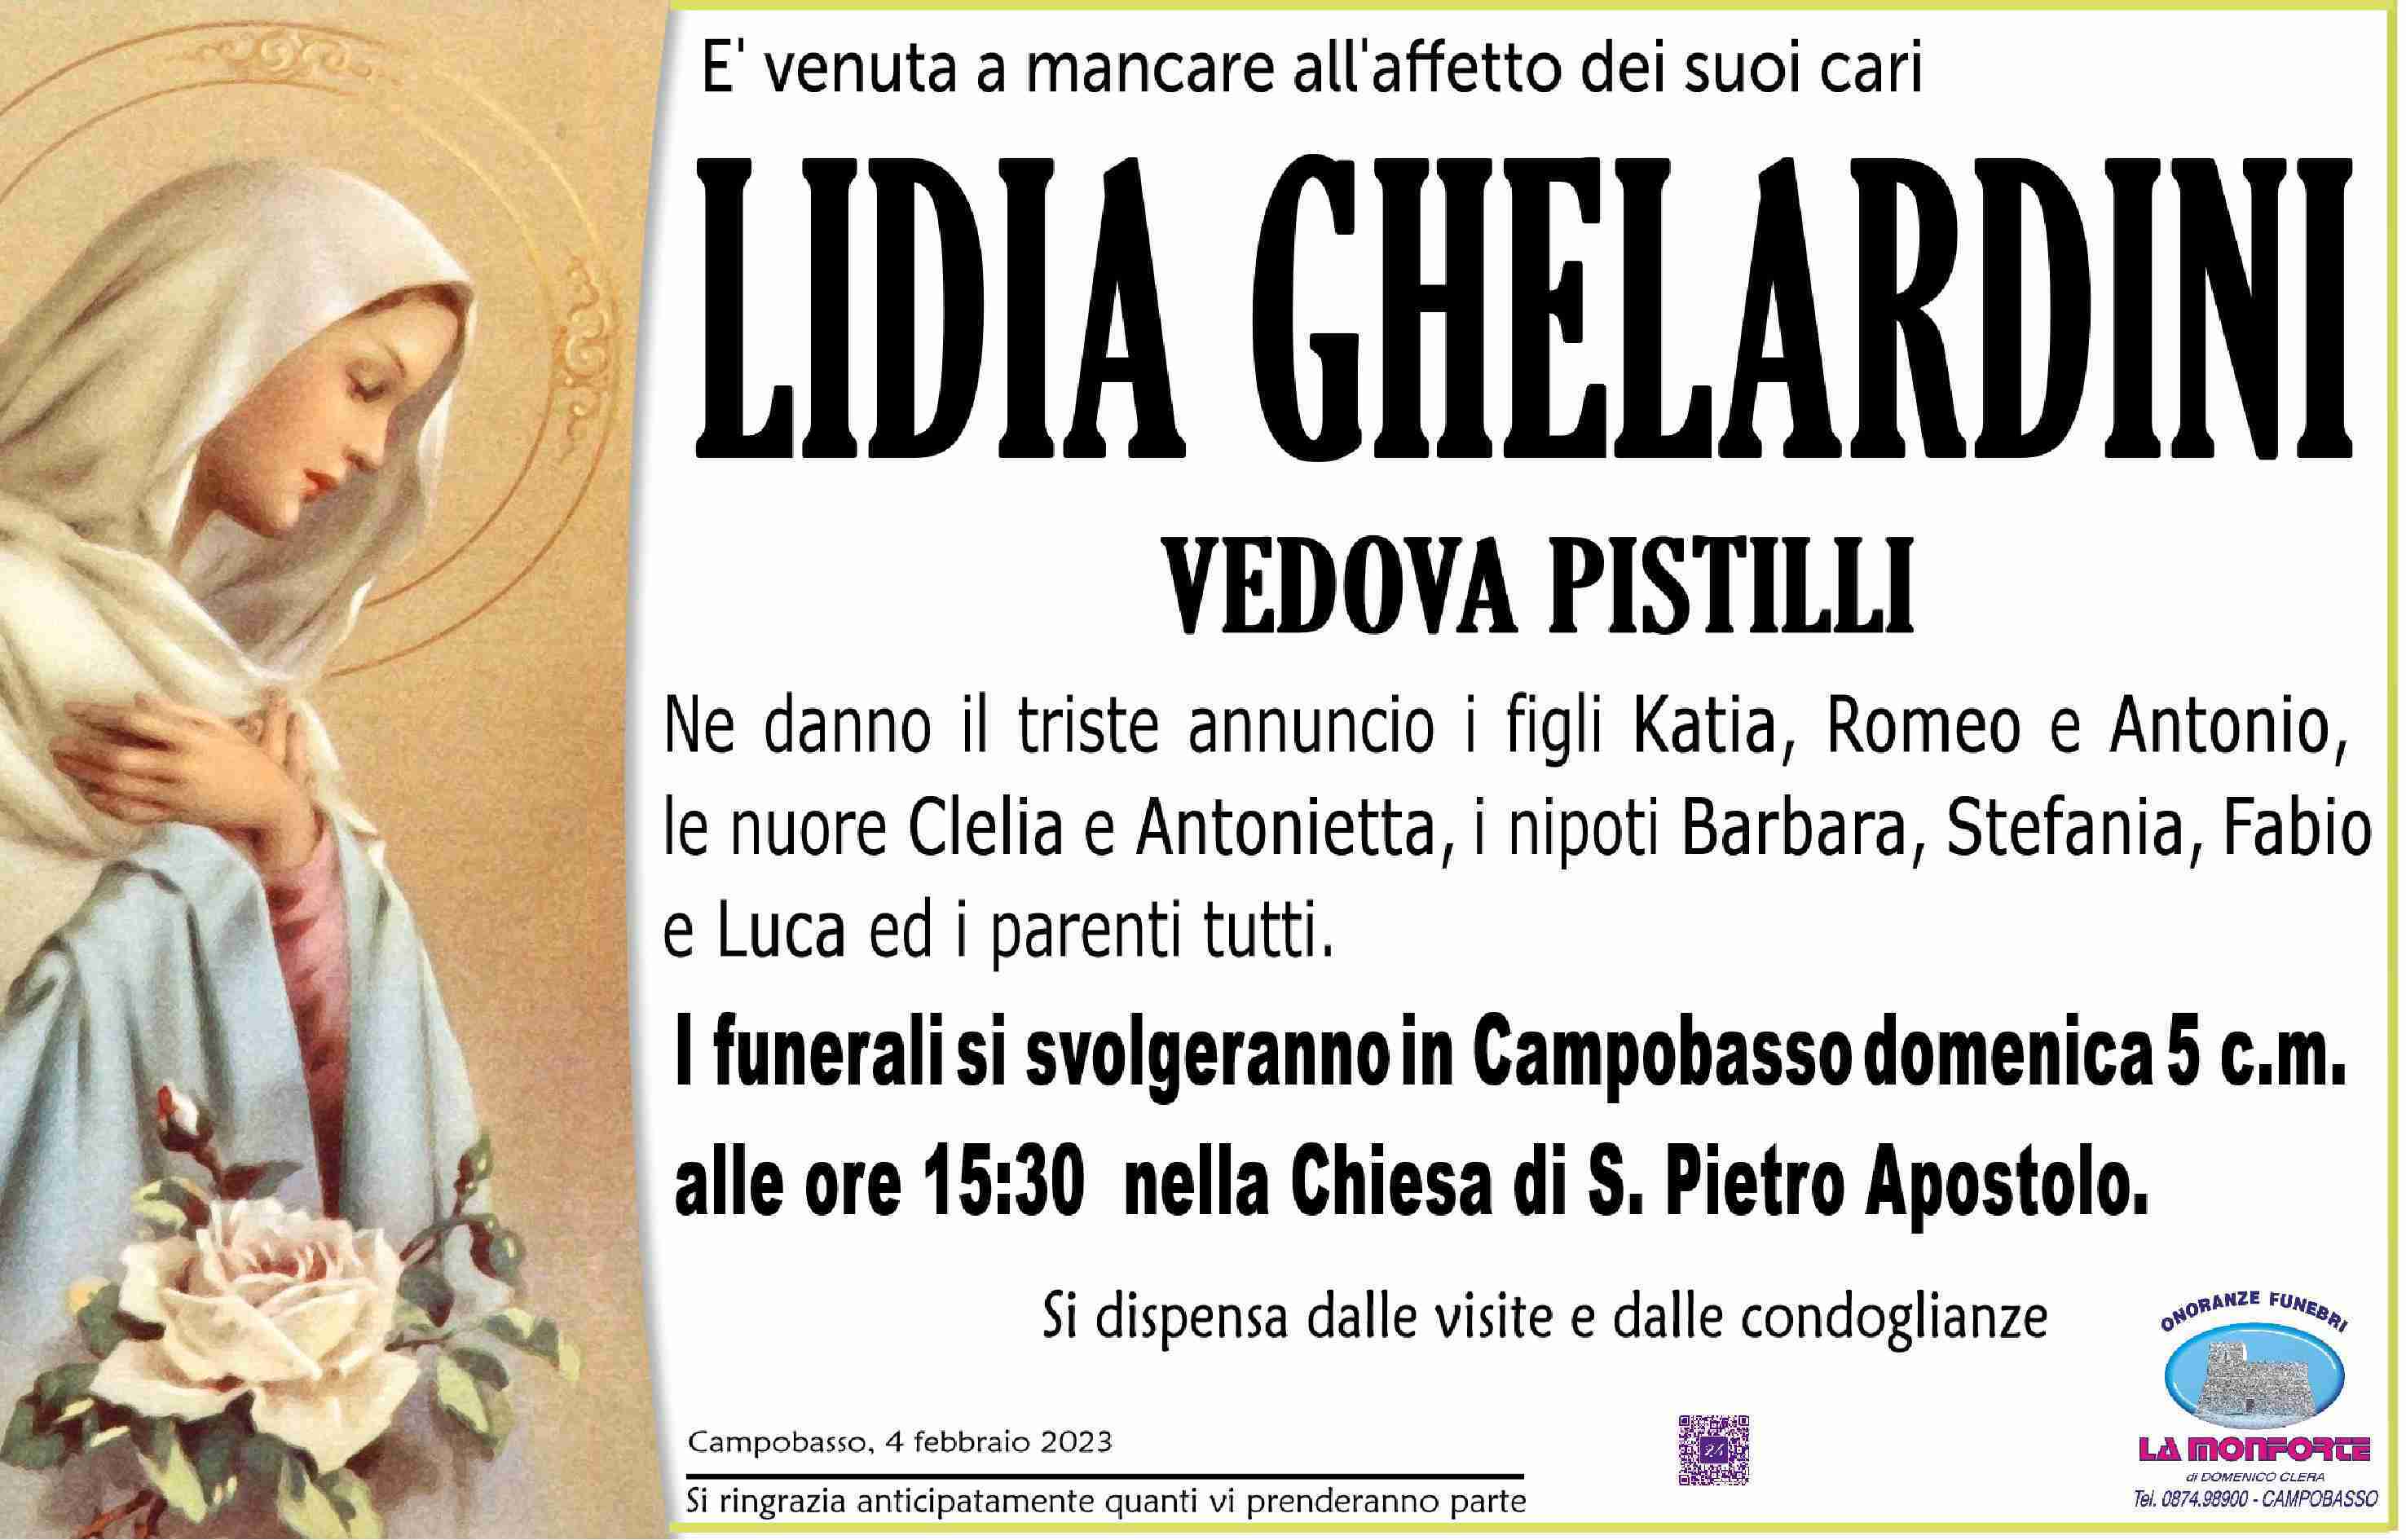 Lidia Ghelardini